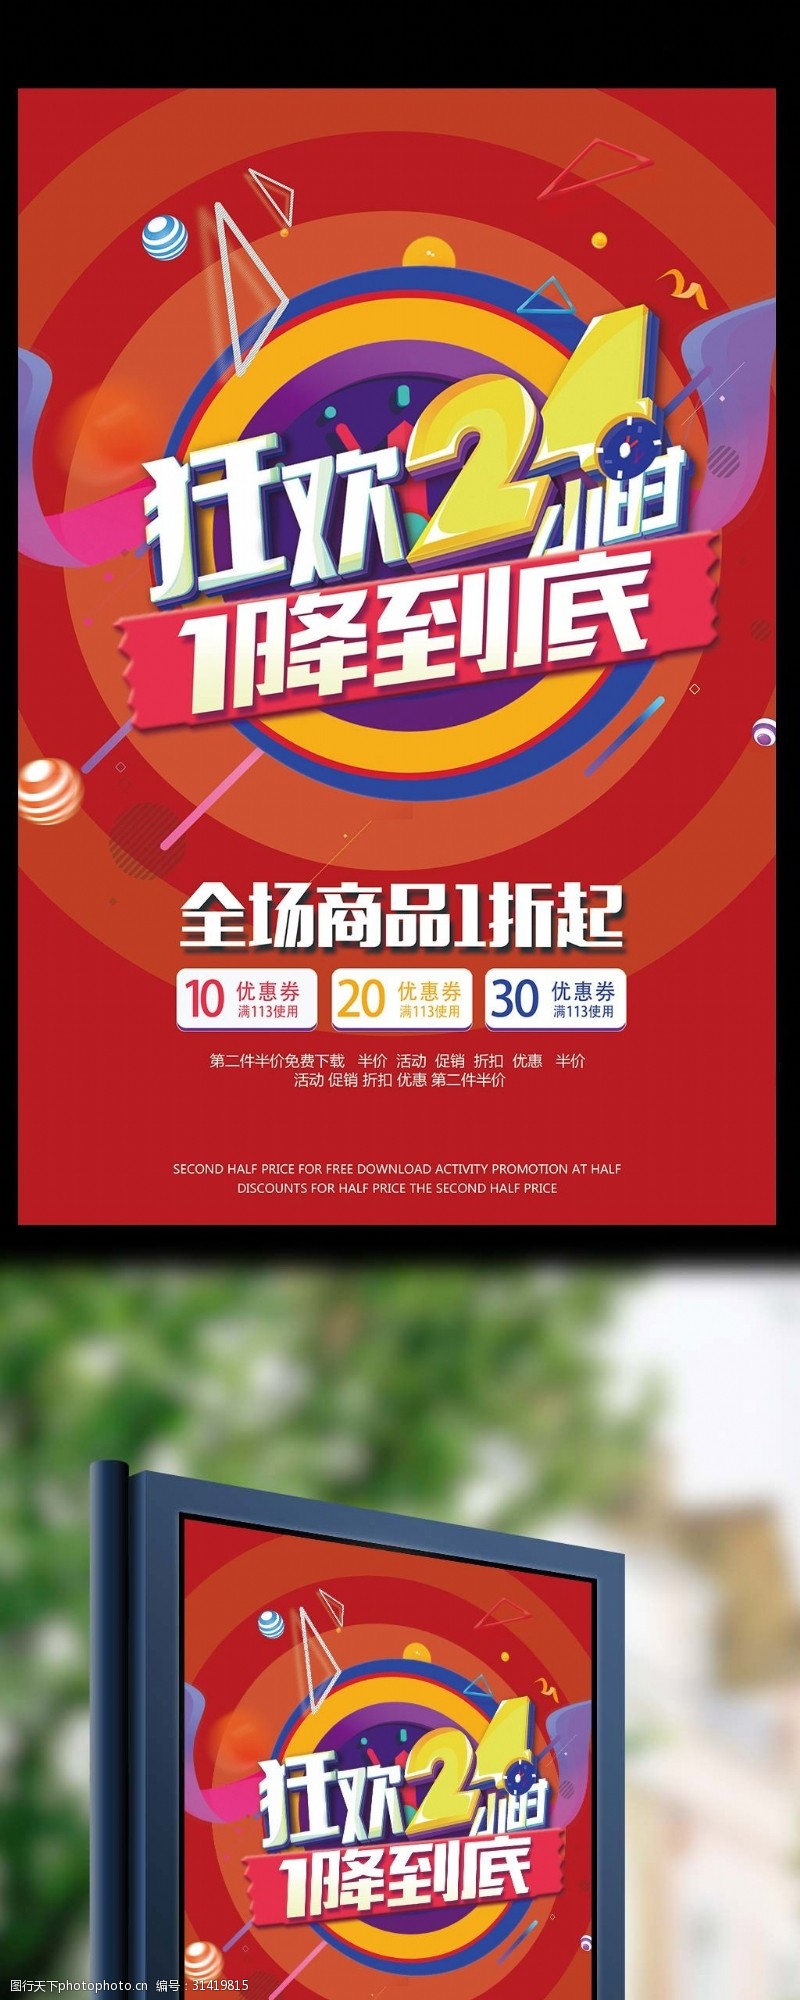 双12店庆2017创意合成炫彩促销海报